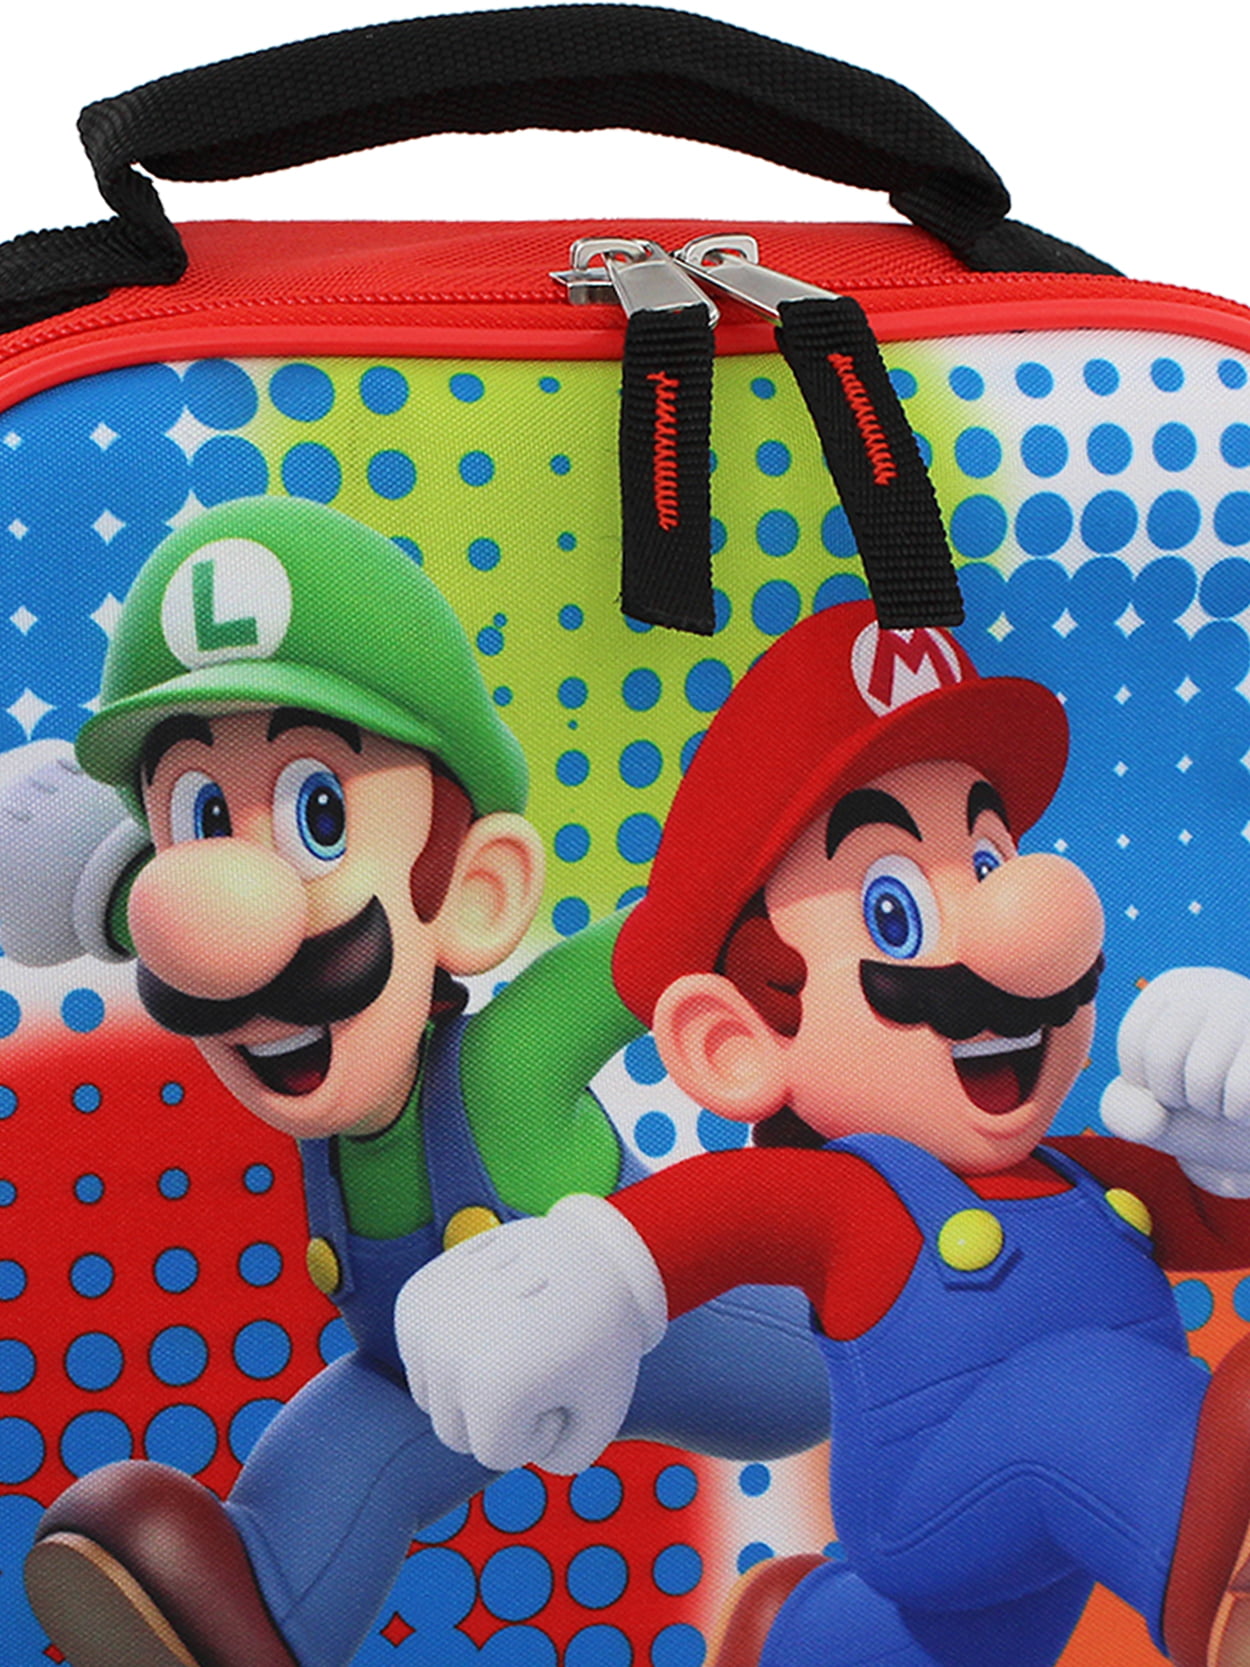 Super Mario lunch 🍄⭐️ #mario #supermario #lunchboxideas #schoollunch